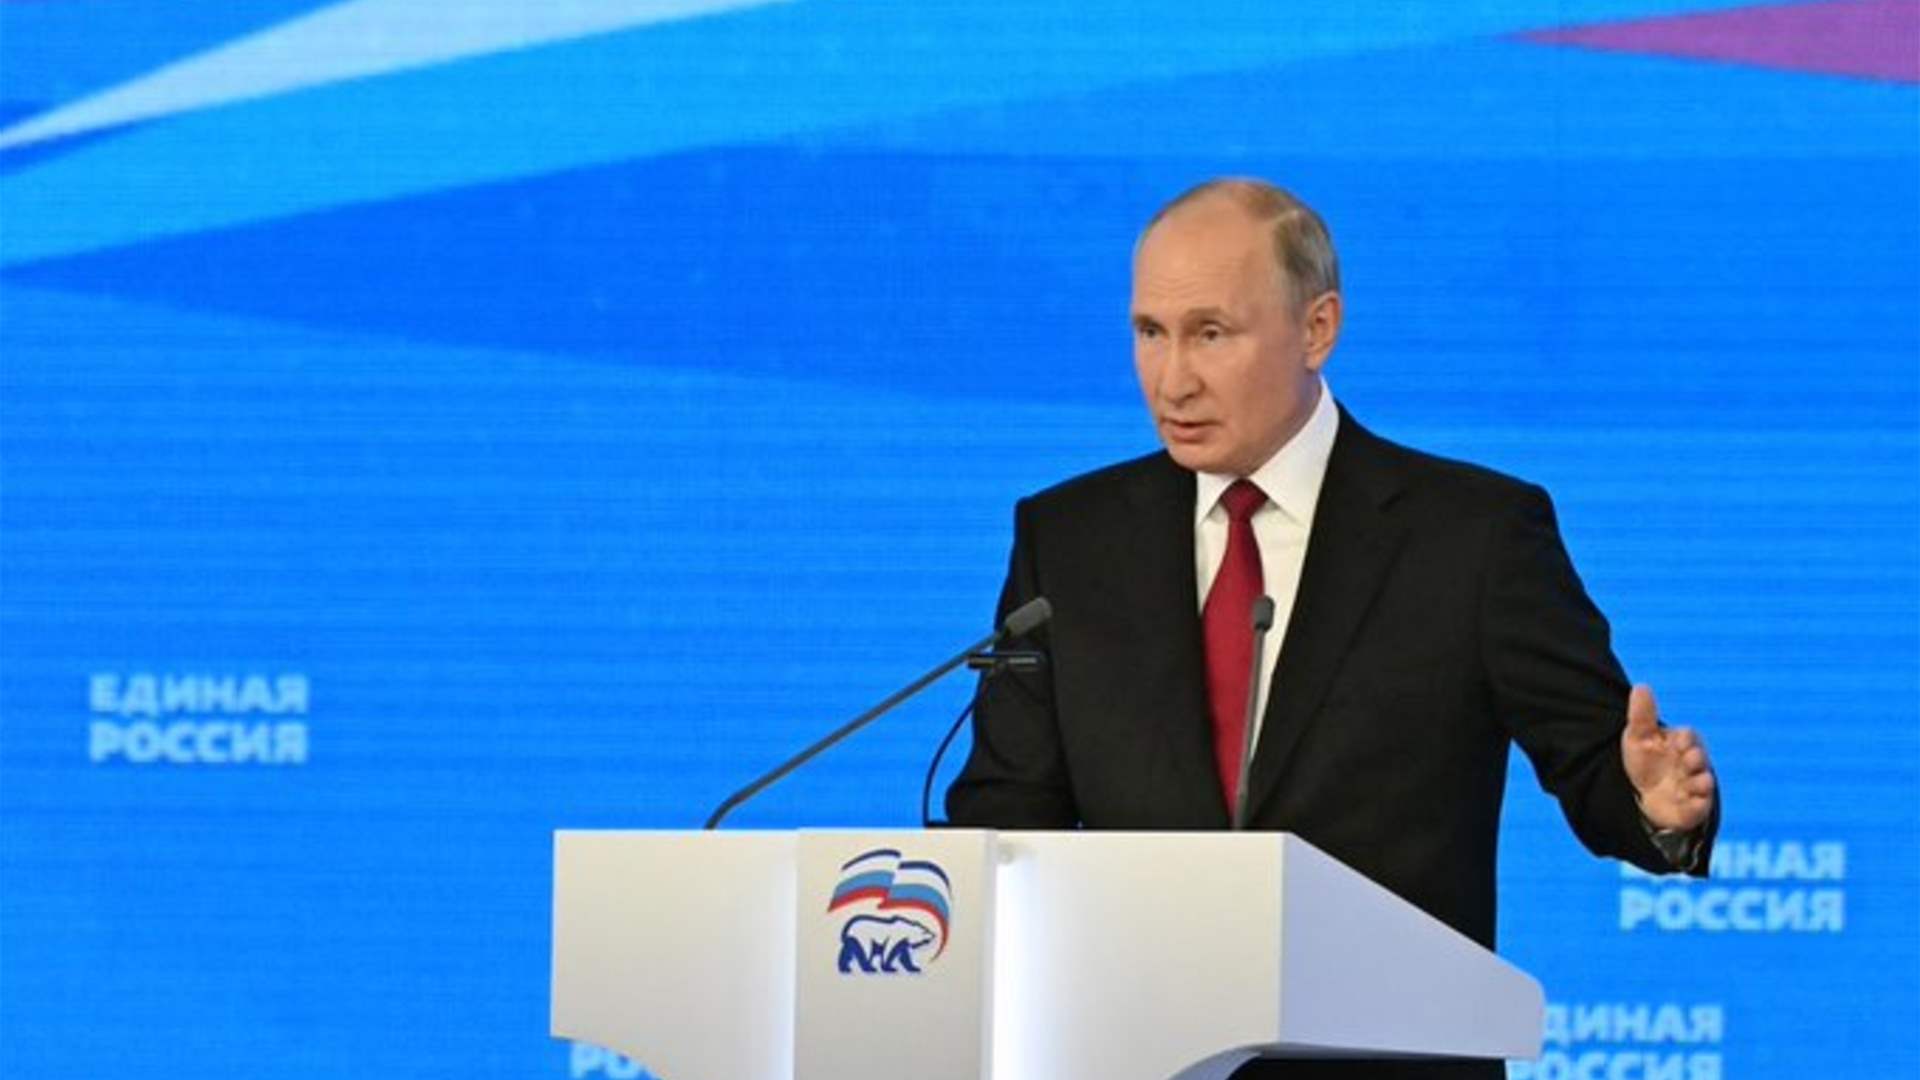 بوتين يتعهد أن يجعل روسيا قوة سيادية في مواجهة الغرب